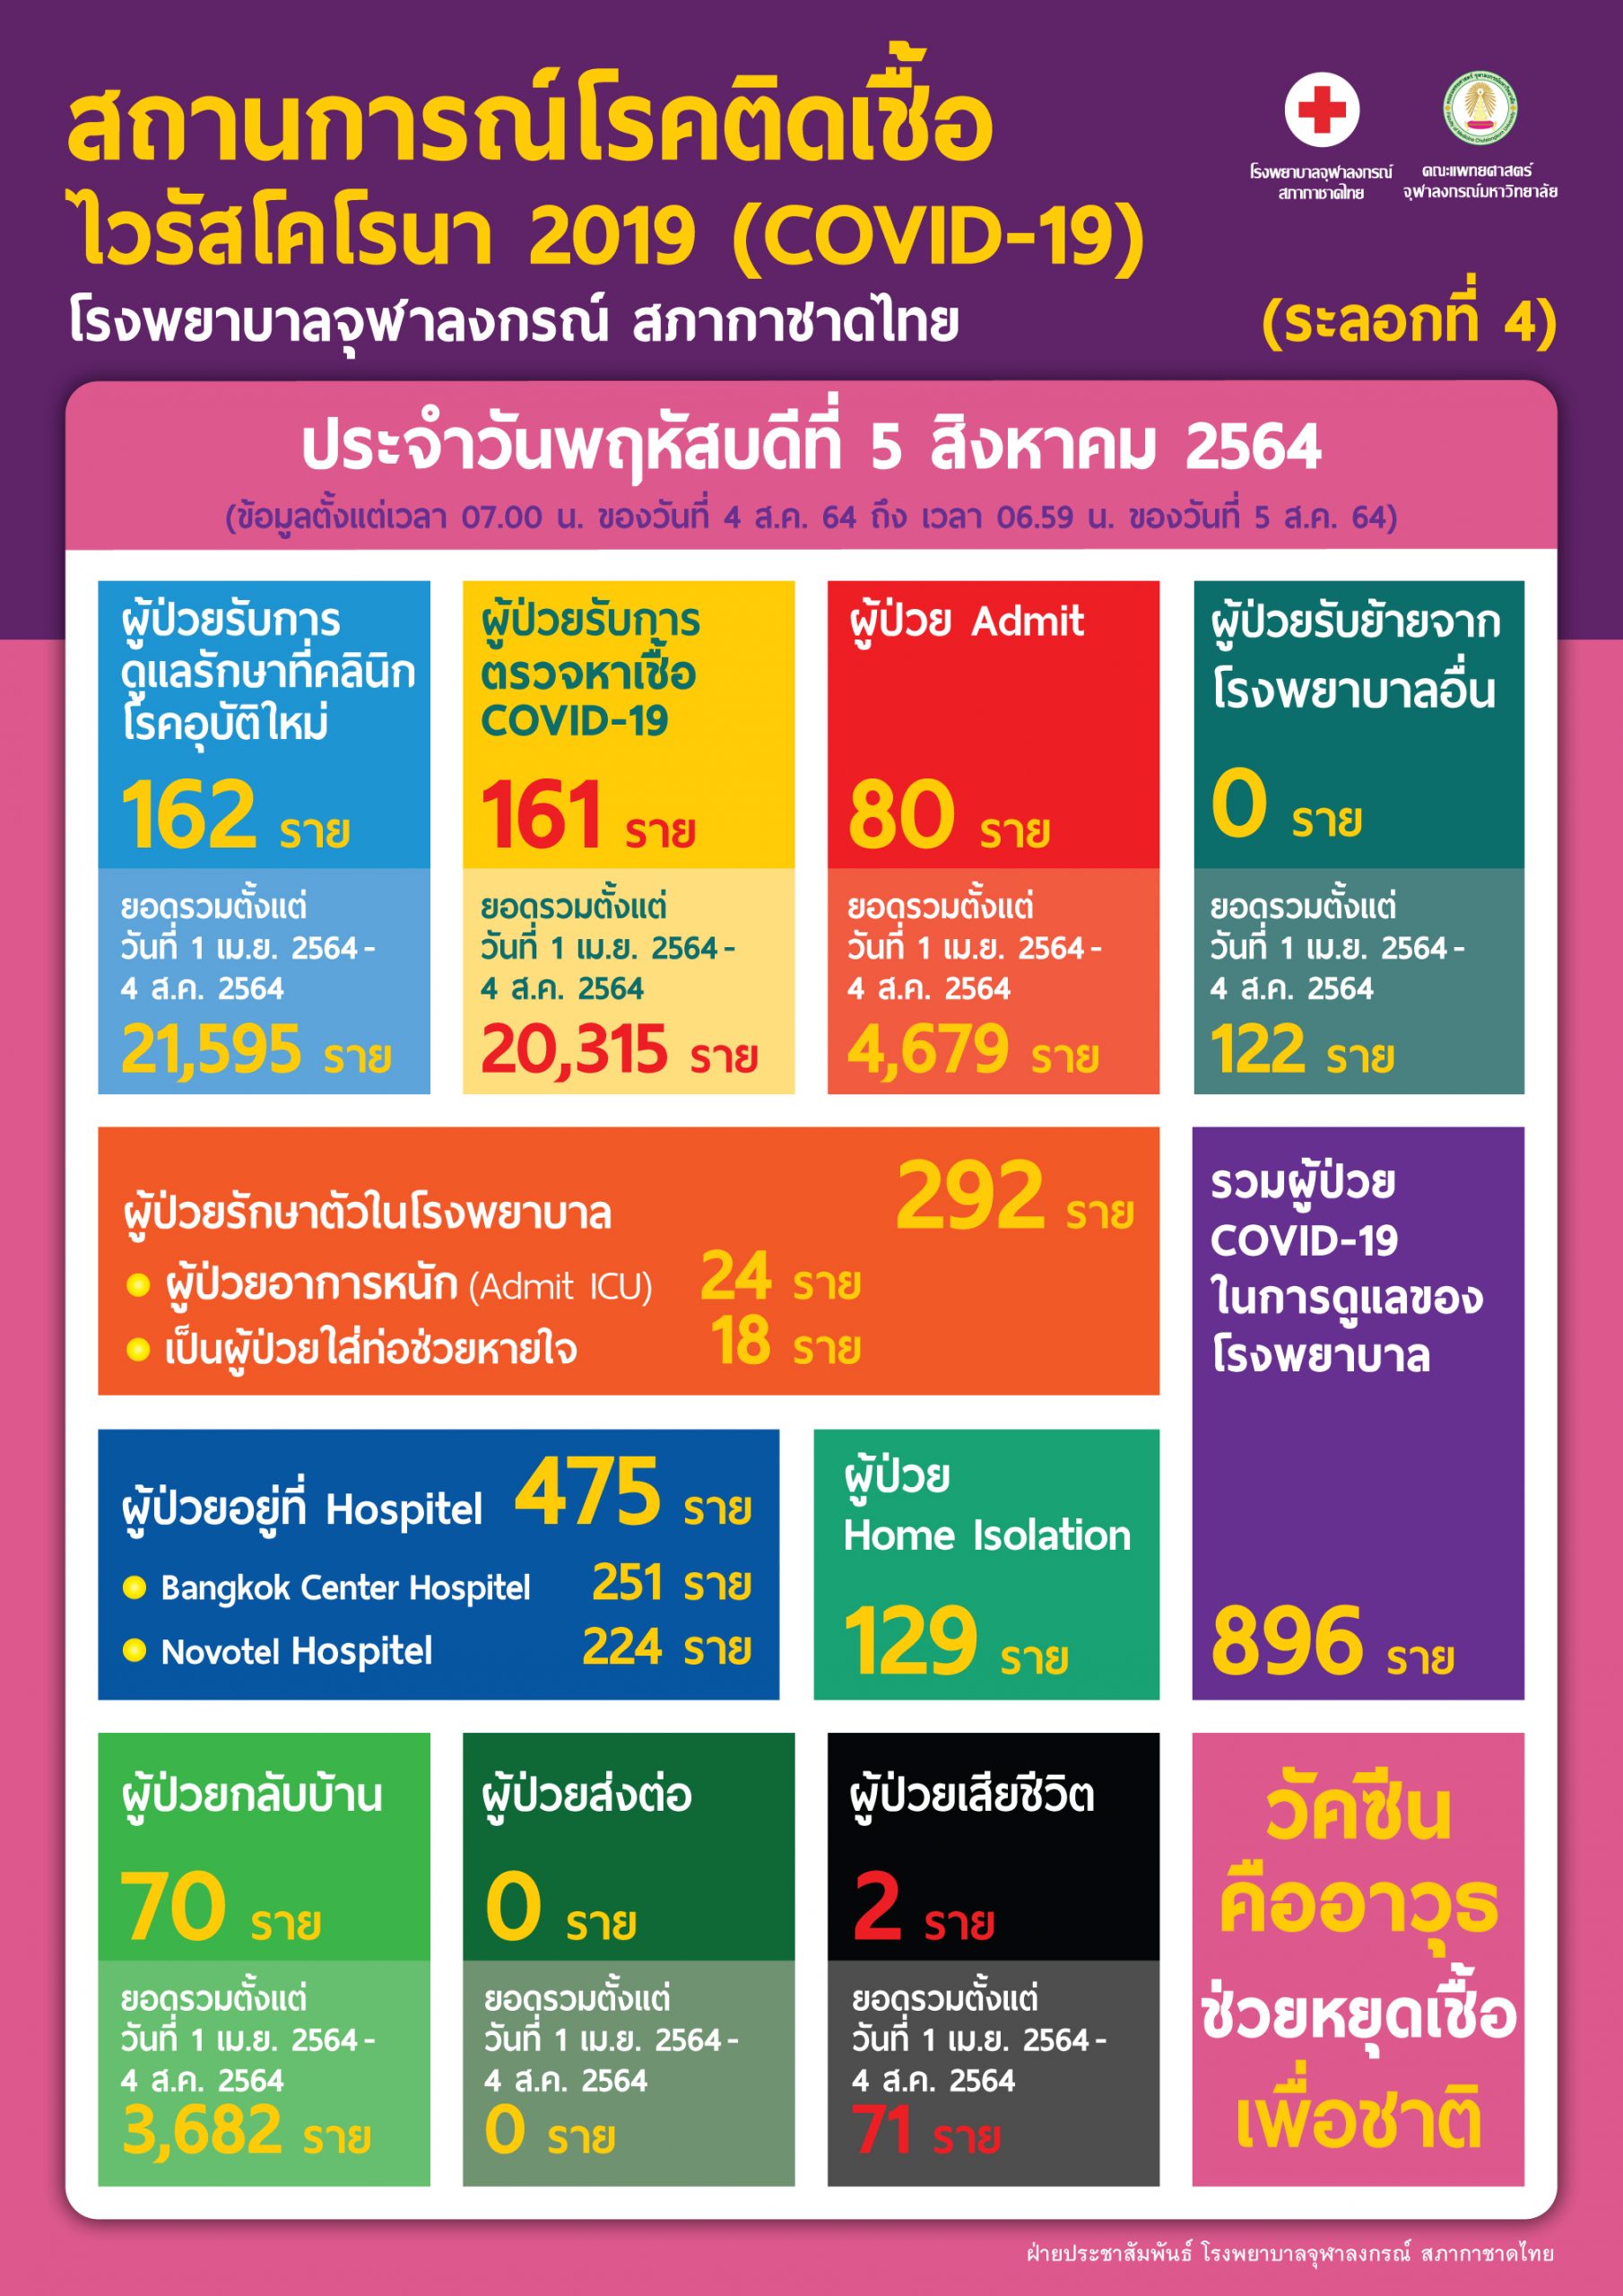 สถานการณ์โรคติดเชื้อไวรัสโคโรนา 2019 (COVID-19)  (ระลอกที่ 4) โรงพยาบาลจุฬาลงกรณ์ สภากาชาดไทย  ประจำวันพฤหัสบดีที่ 5 สิงหาคม 2564